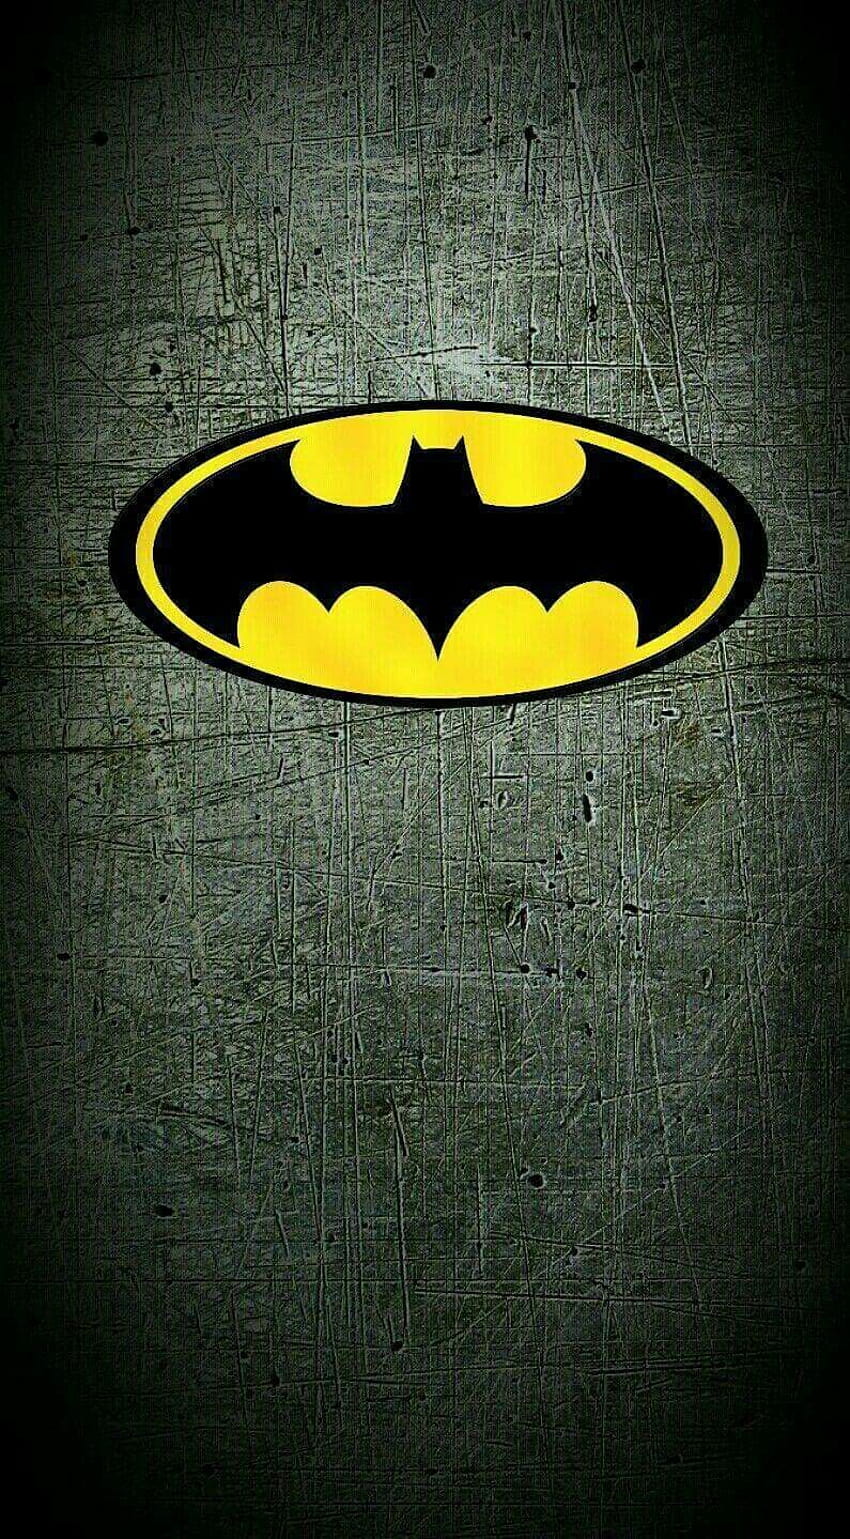 Hình Nền Khuôn Mặt Batman Hấp Dẫn Tỏa Sáng Giữa Bối Cảnh Tối Tăm Bí ẩn, Tỏi Hình  Nền, Lý Lịch Hình Nền, Chiếu Sáng Hình Nền, HD và Nền Cờ đẹp